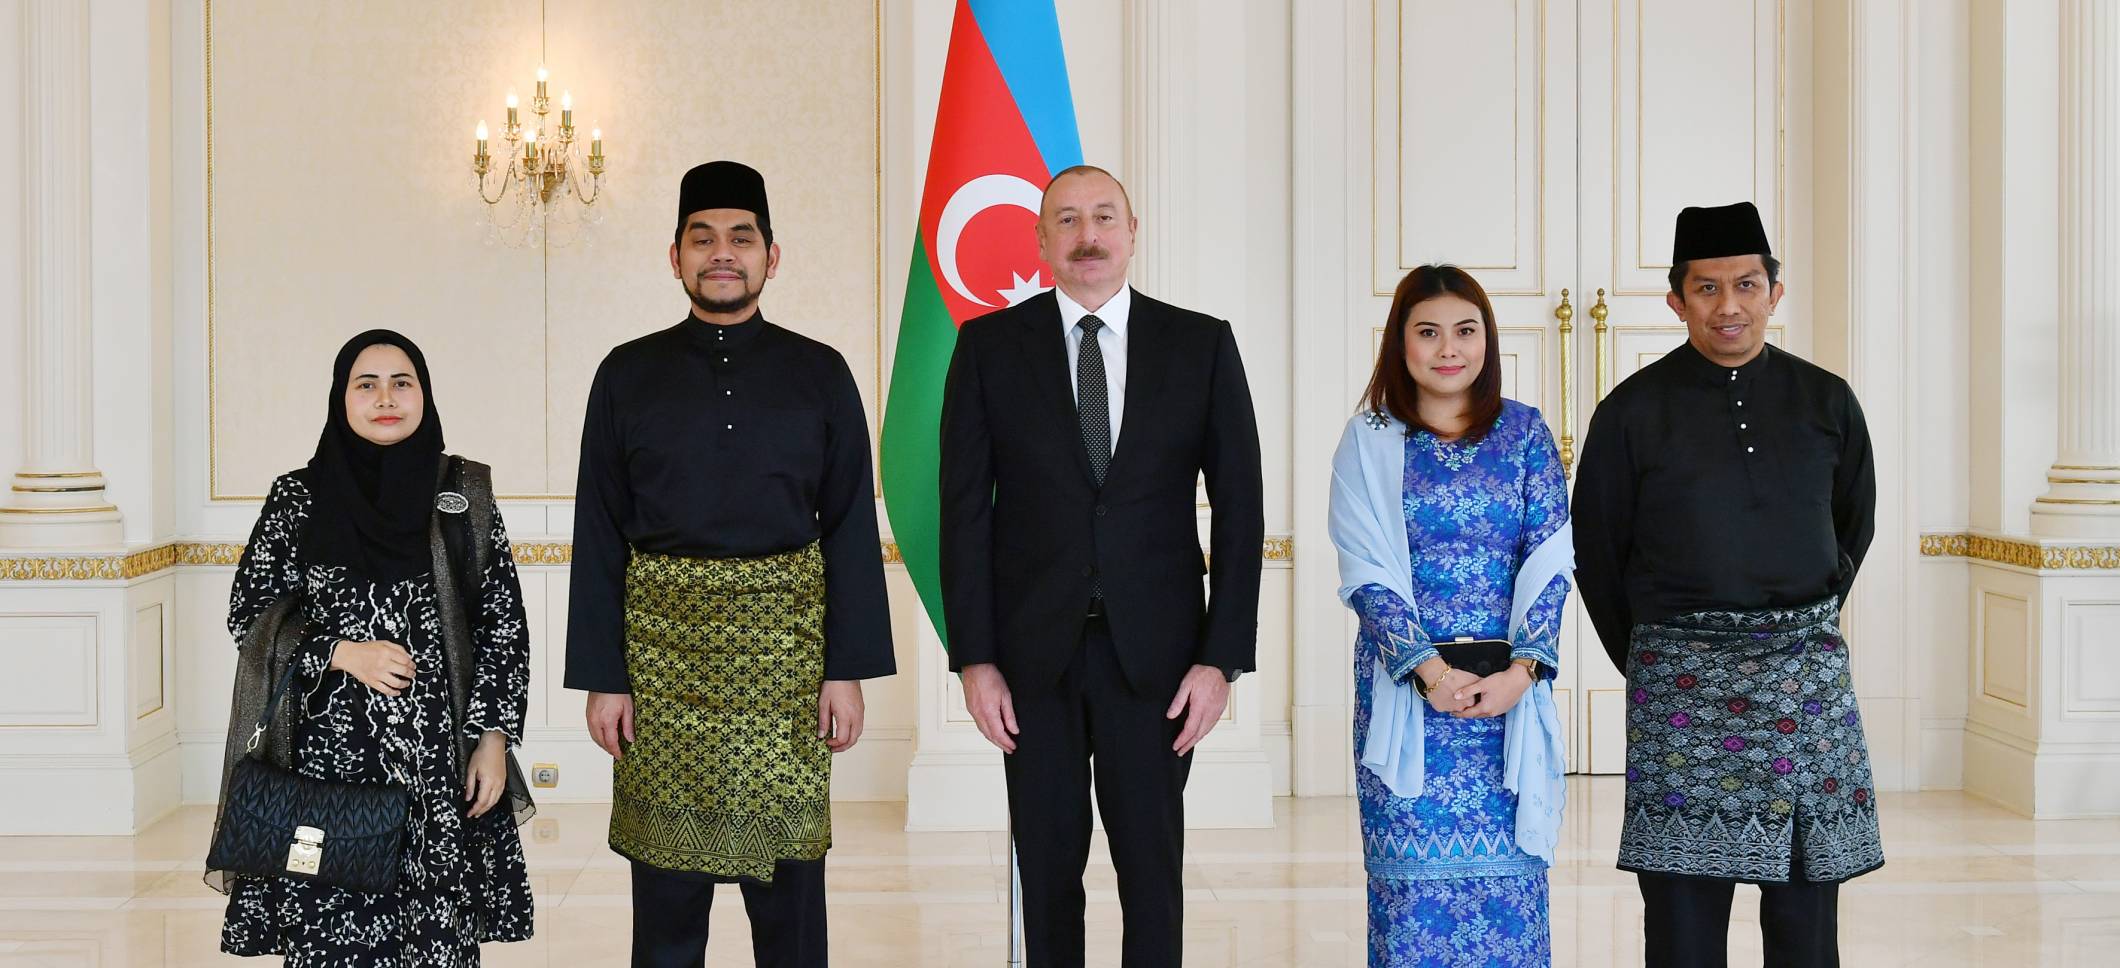 Ильхам Алиев принял верительные грамоты новоназначенного посла Малайзии в Азербайджане 